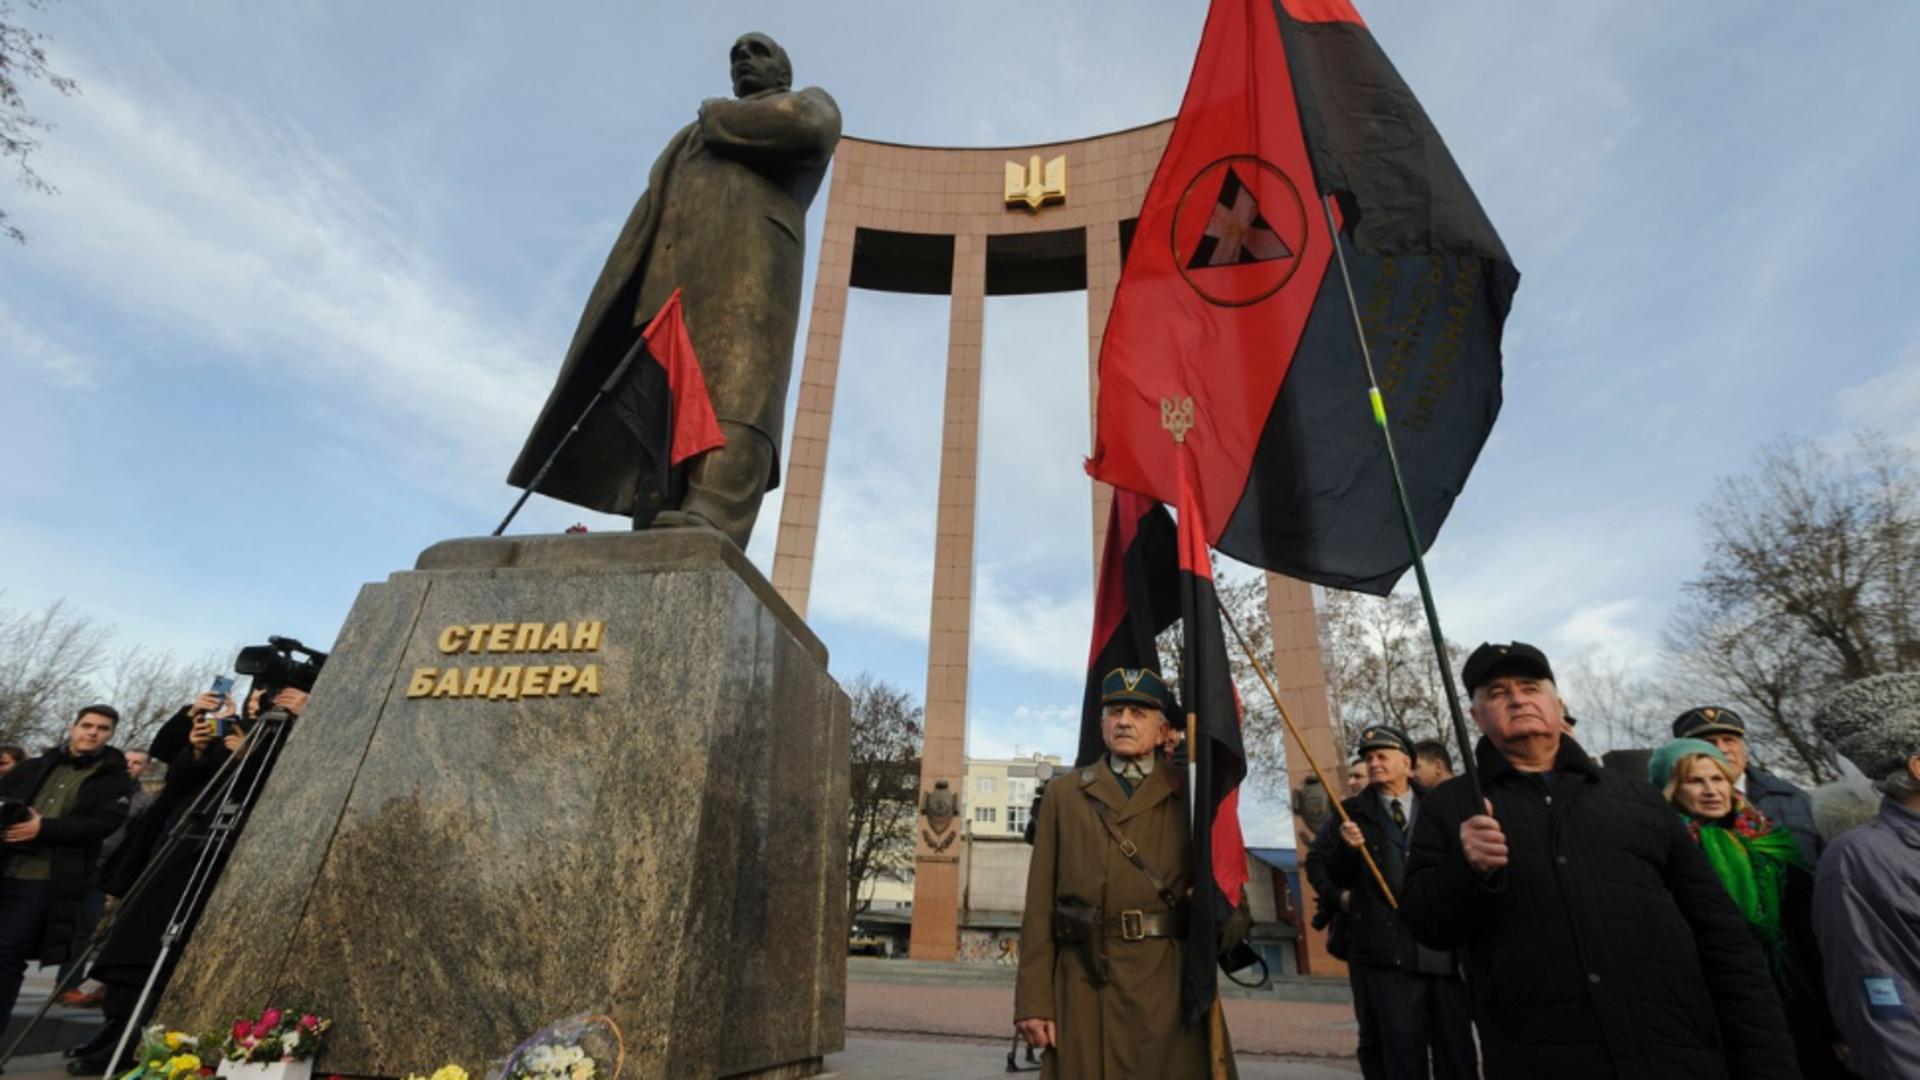 Comemorarea lui Stefan Bandera la Kiev (Profimedia)